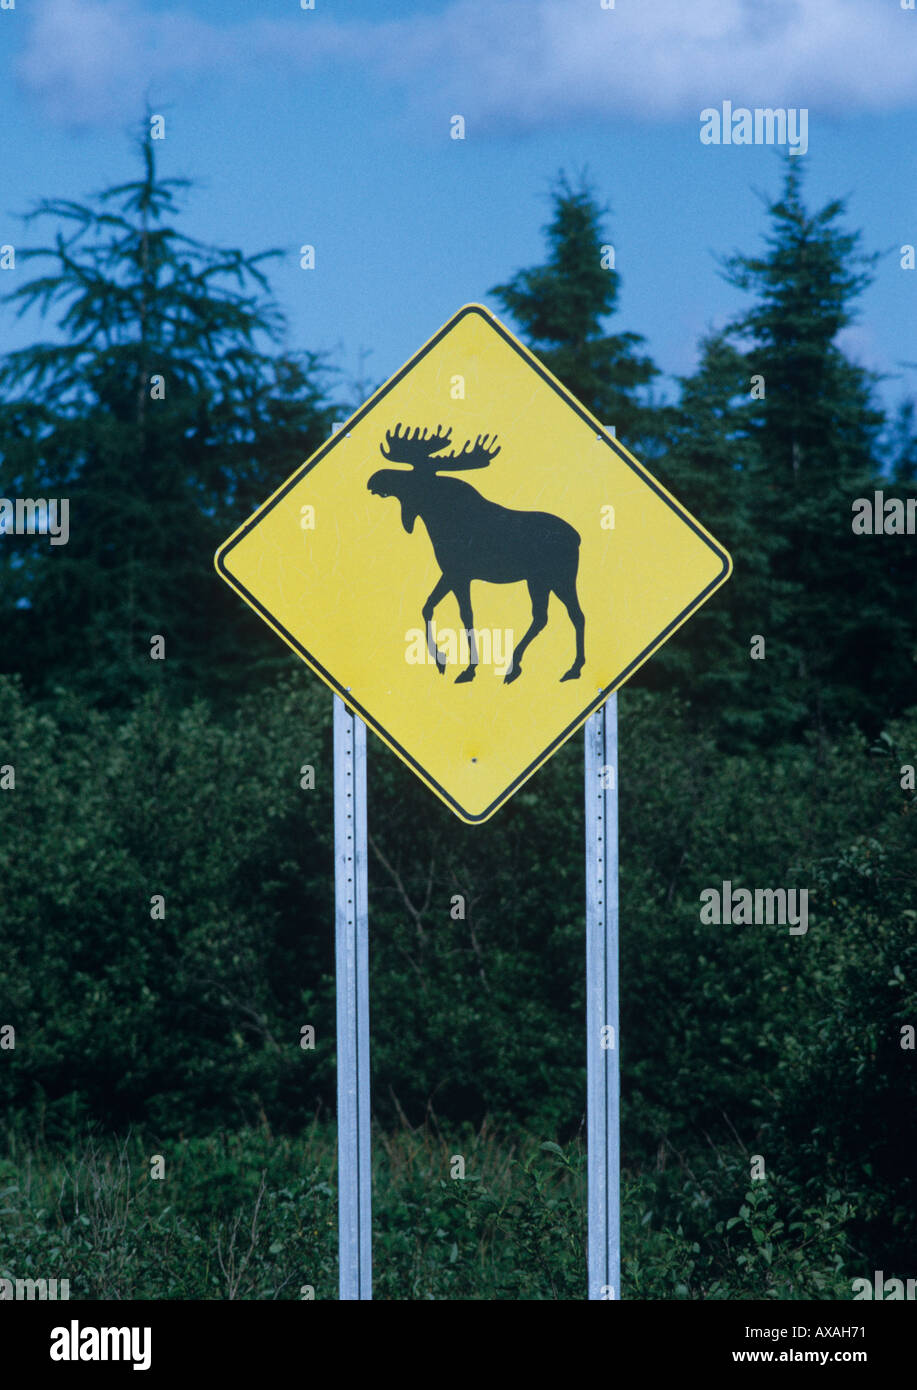 Du côté de la route d'avertissement de passage à l'orignal une collision de la route forestière pourrait causer de grands dommages au véhicule et l'Ontario Canada Banque D'Images